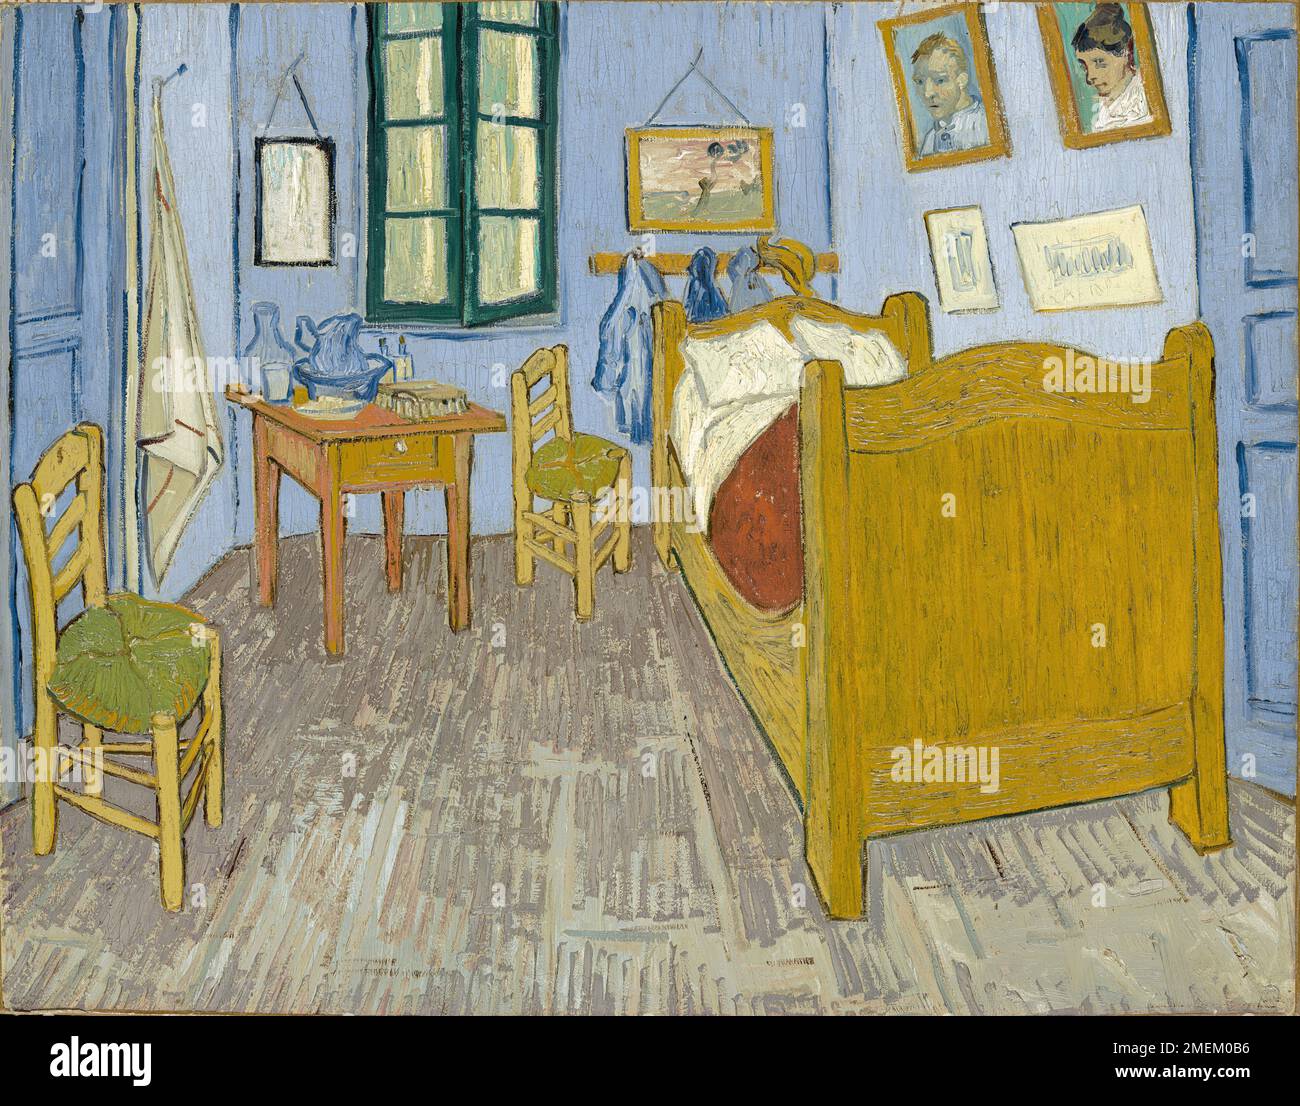 Vincent van Gogh, Vincents Schlafzimmer in Arles, 1889, Öl auf Leinwand, Musée d'Orsay, Paris, Frankreich. Sehr hohe Auflösungsdatei Stockfoto